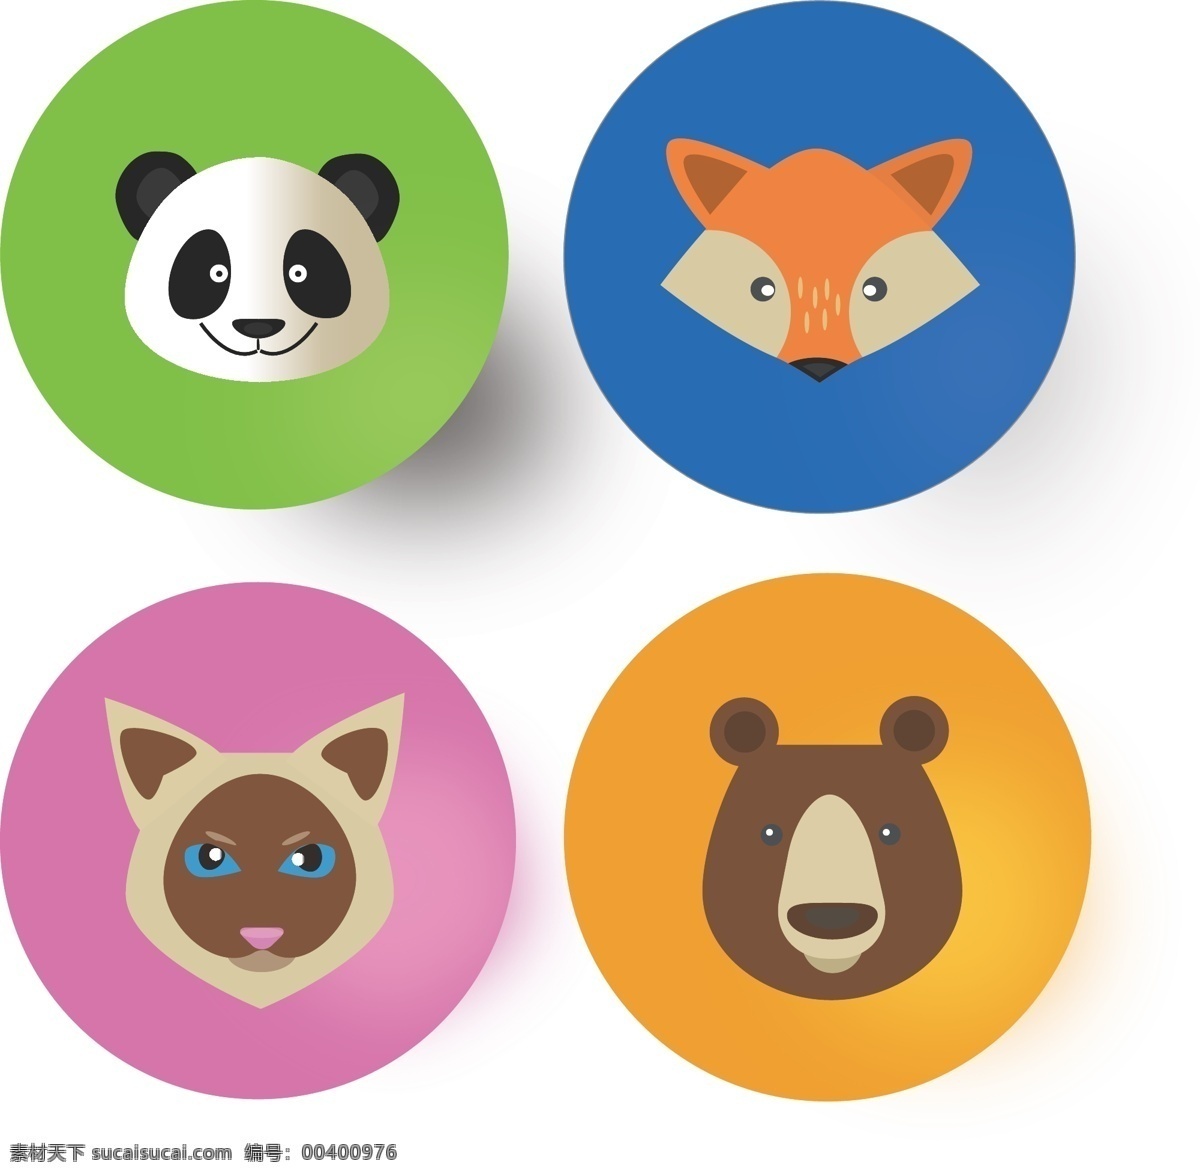 圆形 彩色 动物 熊猫 狐狸 icon 矢量 扁平 图标 圆形动物 扁平化 可爱